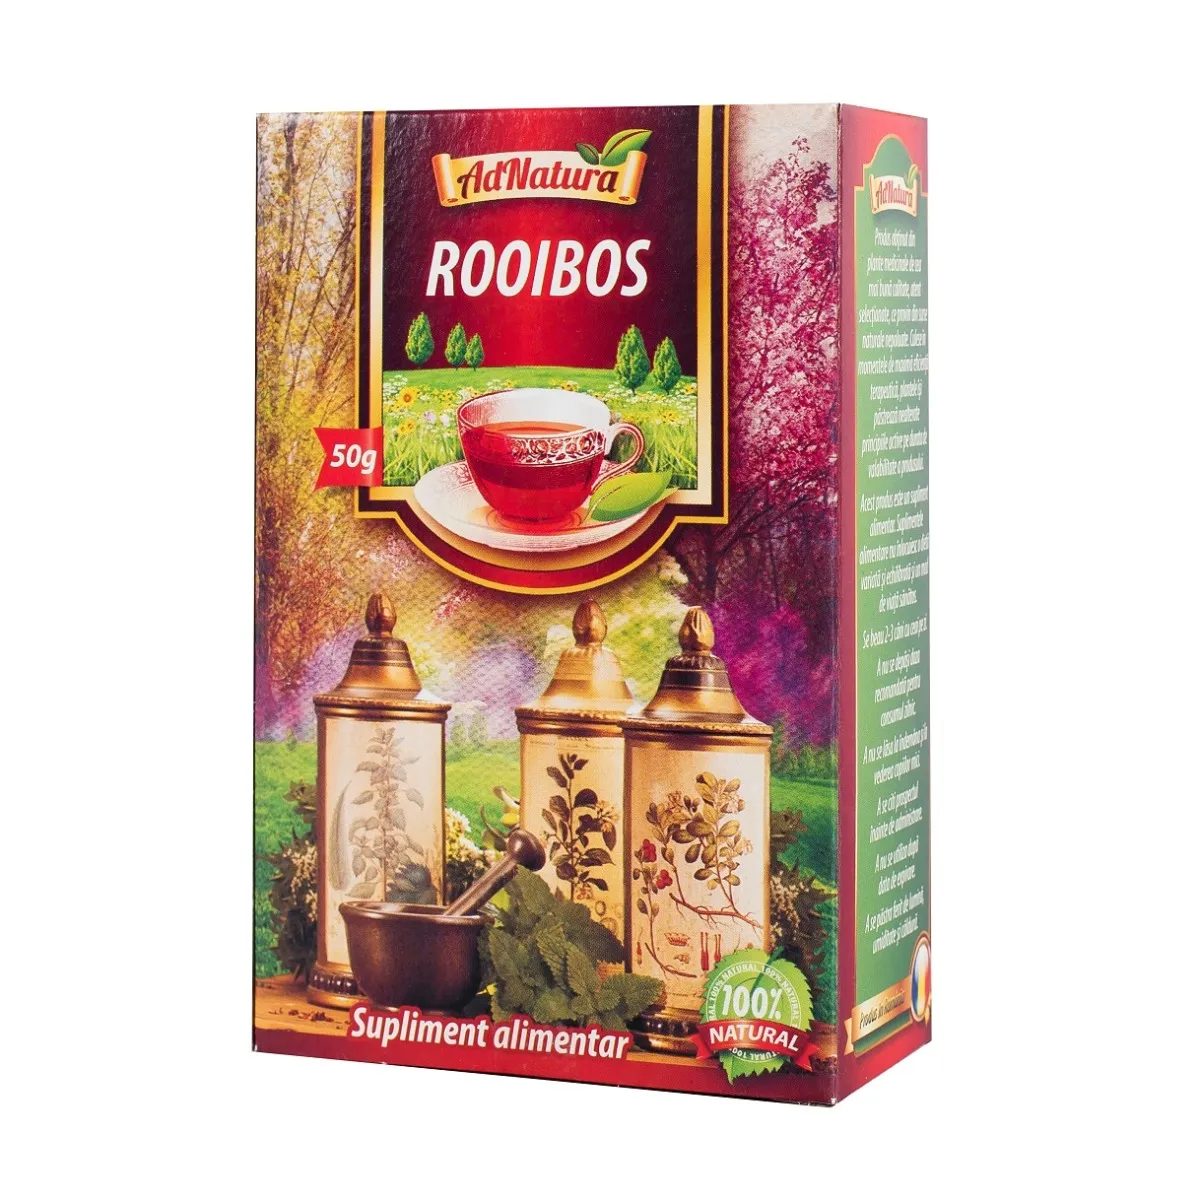 Ceai de rooibos, 50g, AdNatura